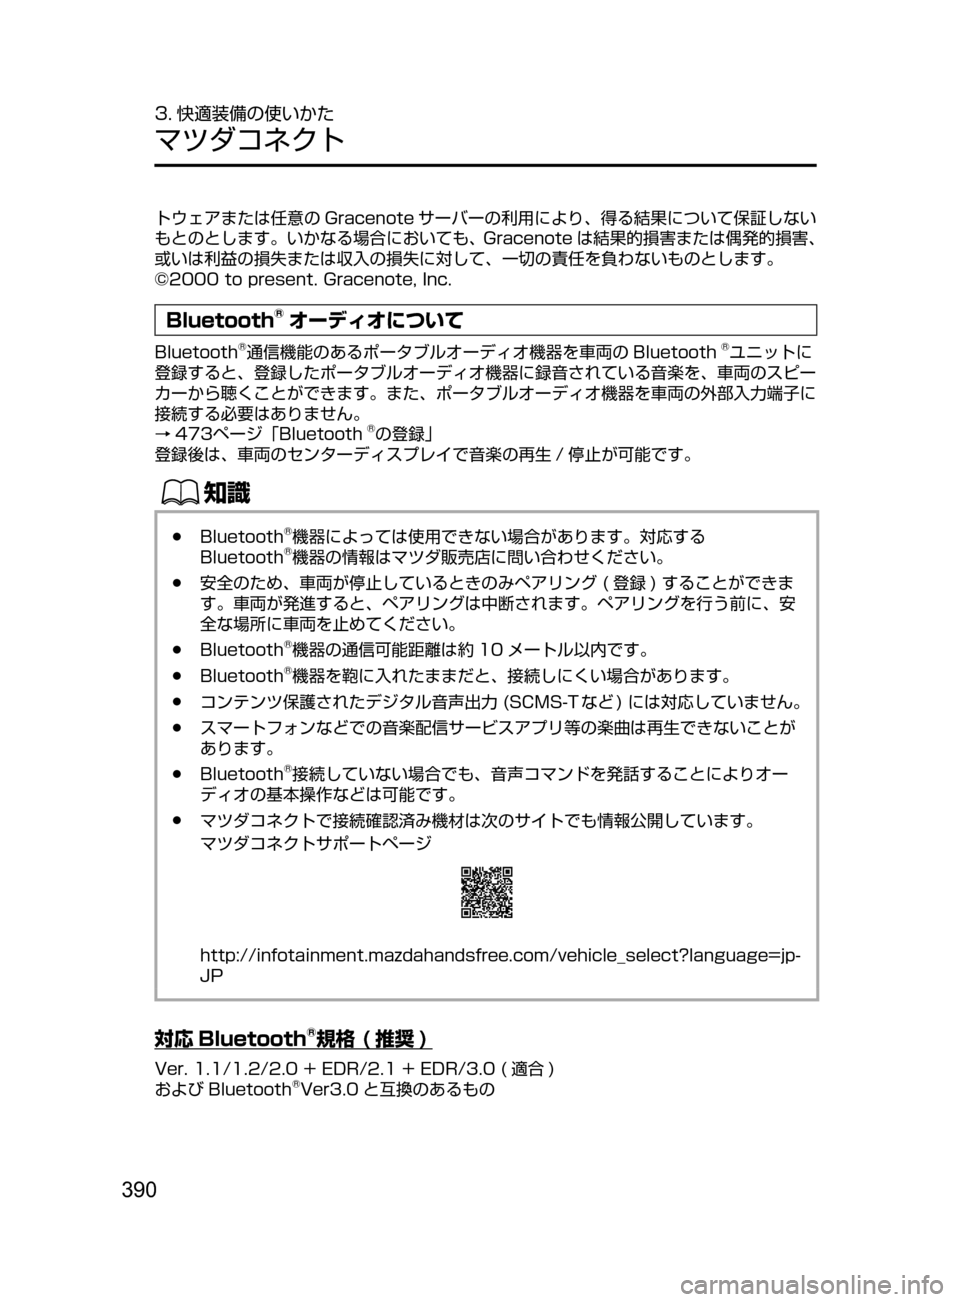 MAZDA MODEL CX-5 2017  取扱説明書 (in Japanese) 390
3. 快適装備の使いかた
マツダコネクト
トウェアまたは任意の Gracenote サーバーの利用により､ 得る結果について保証しない
もとのとします。い�